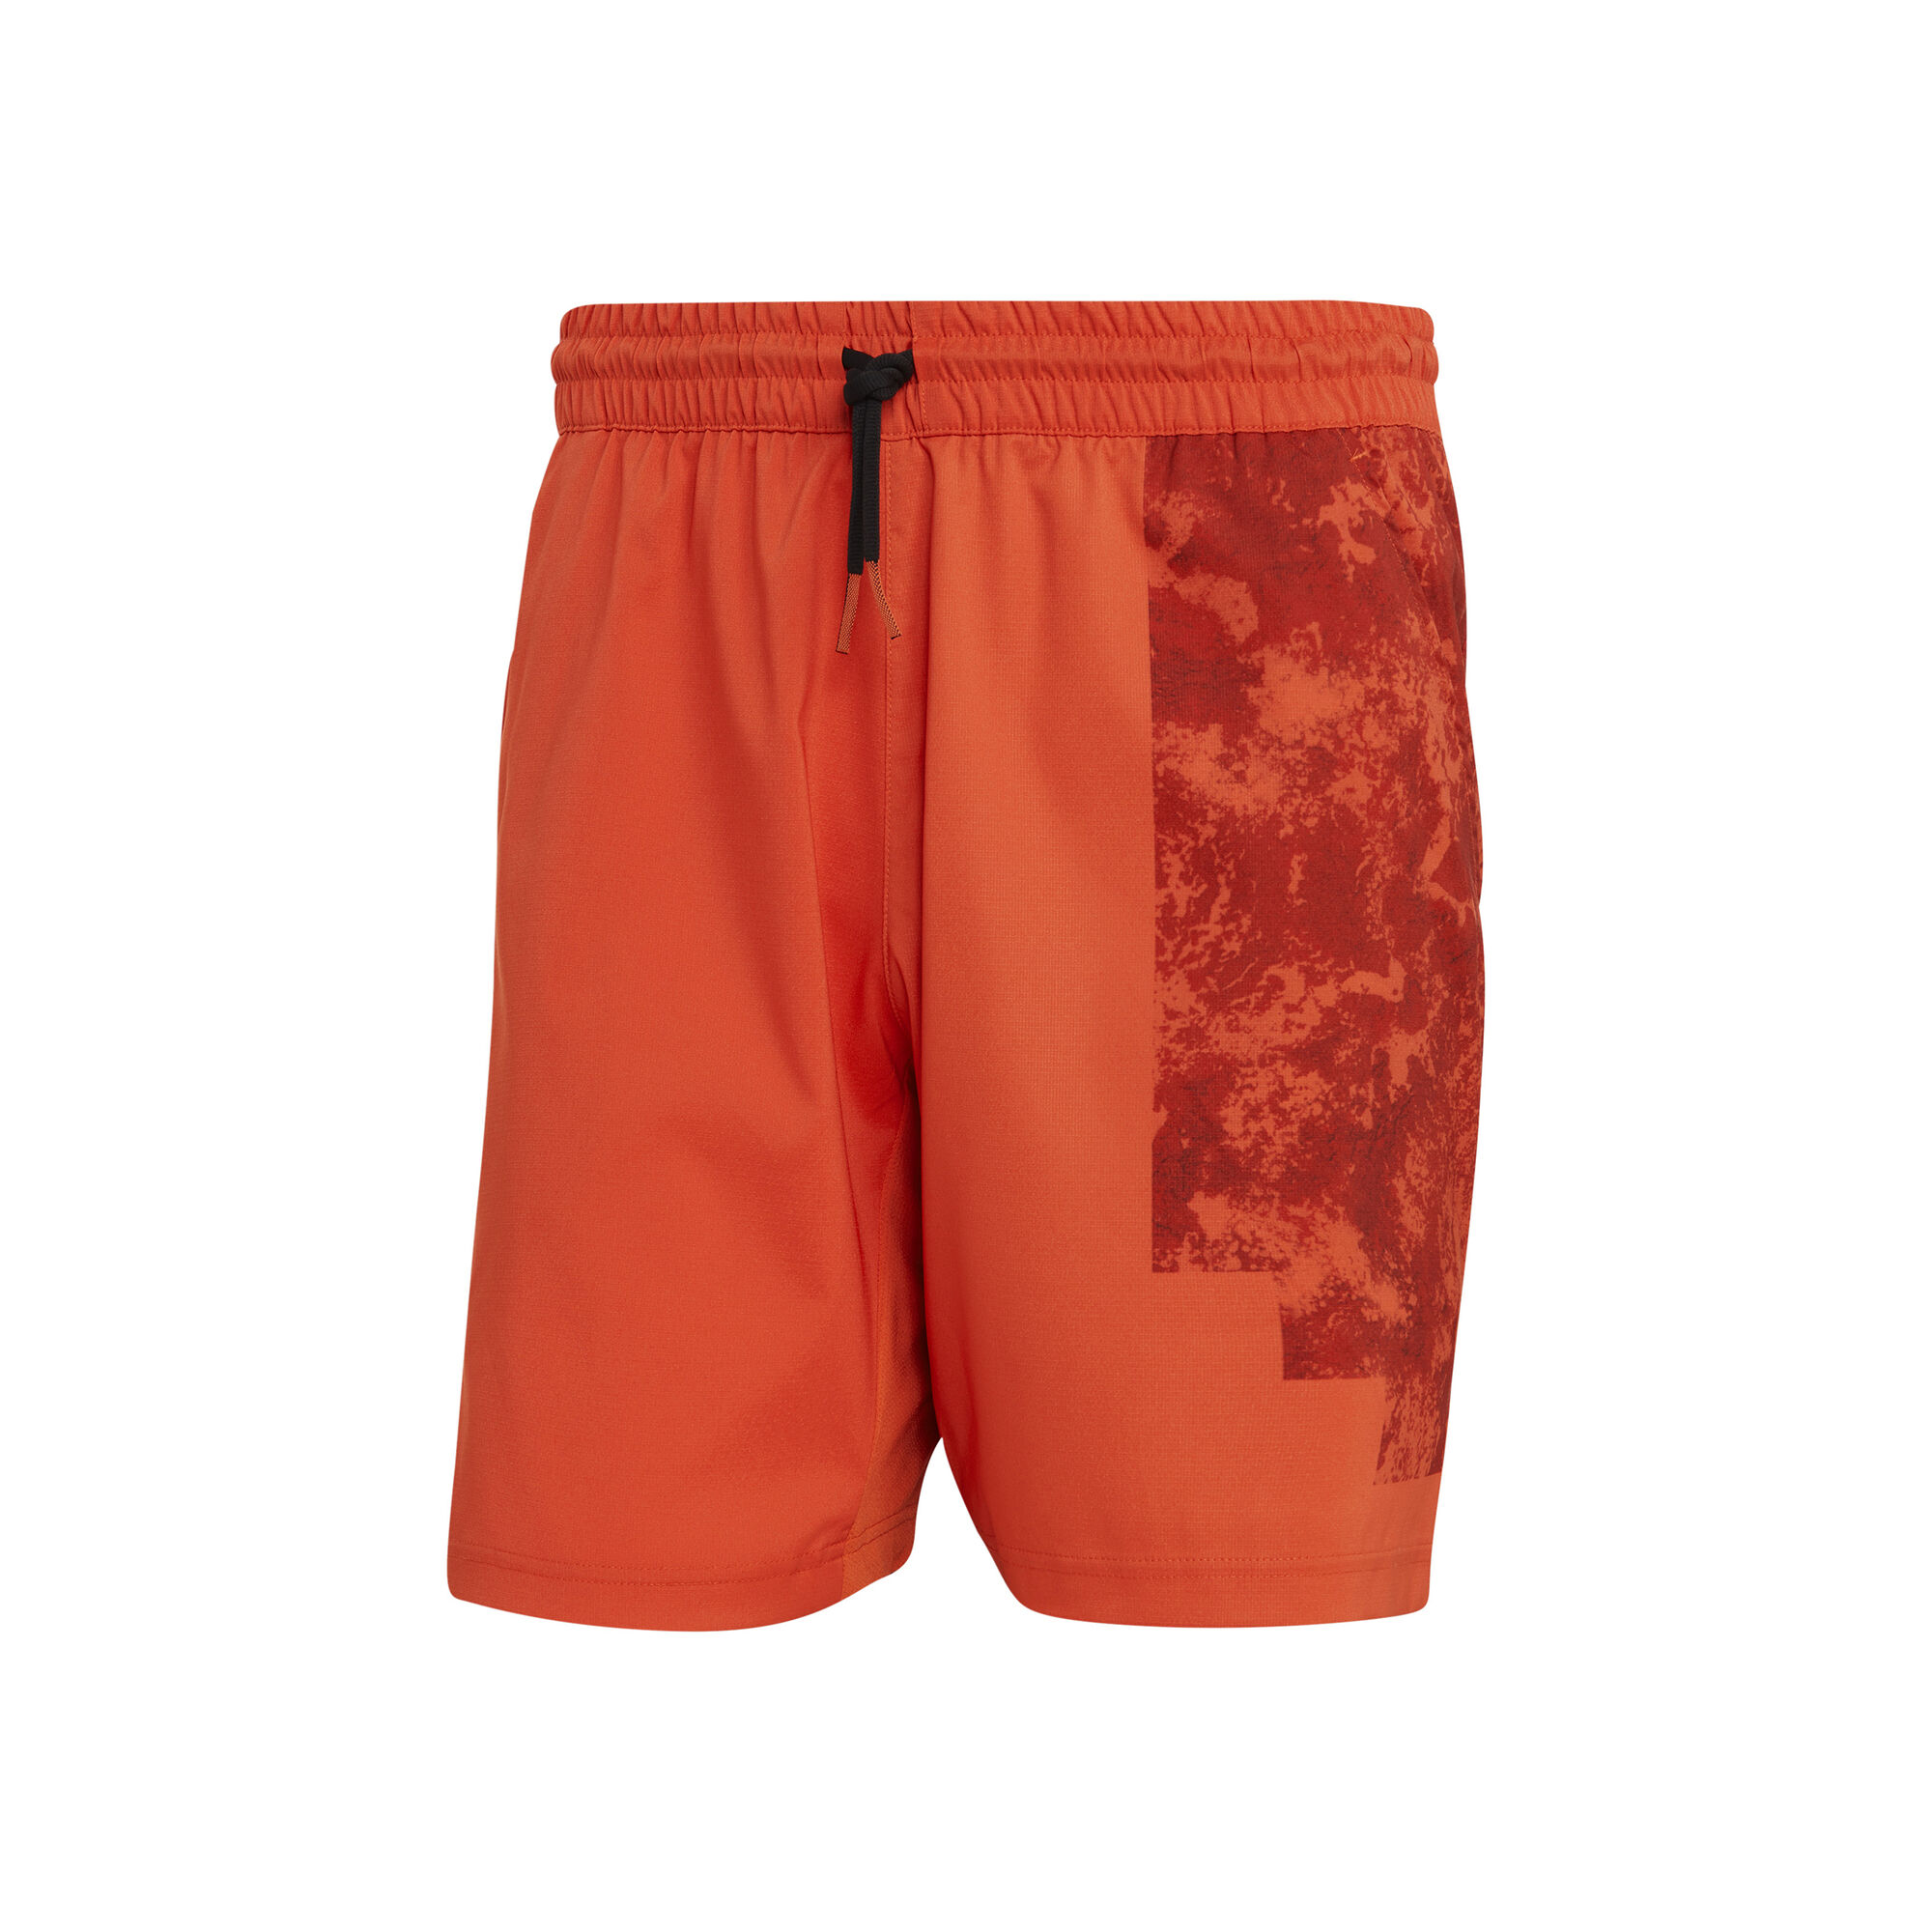 Buy adidas Paris Ergo Shorts Men Orange, Red online